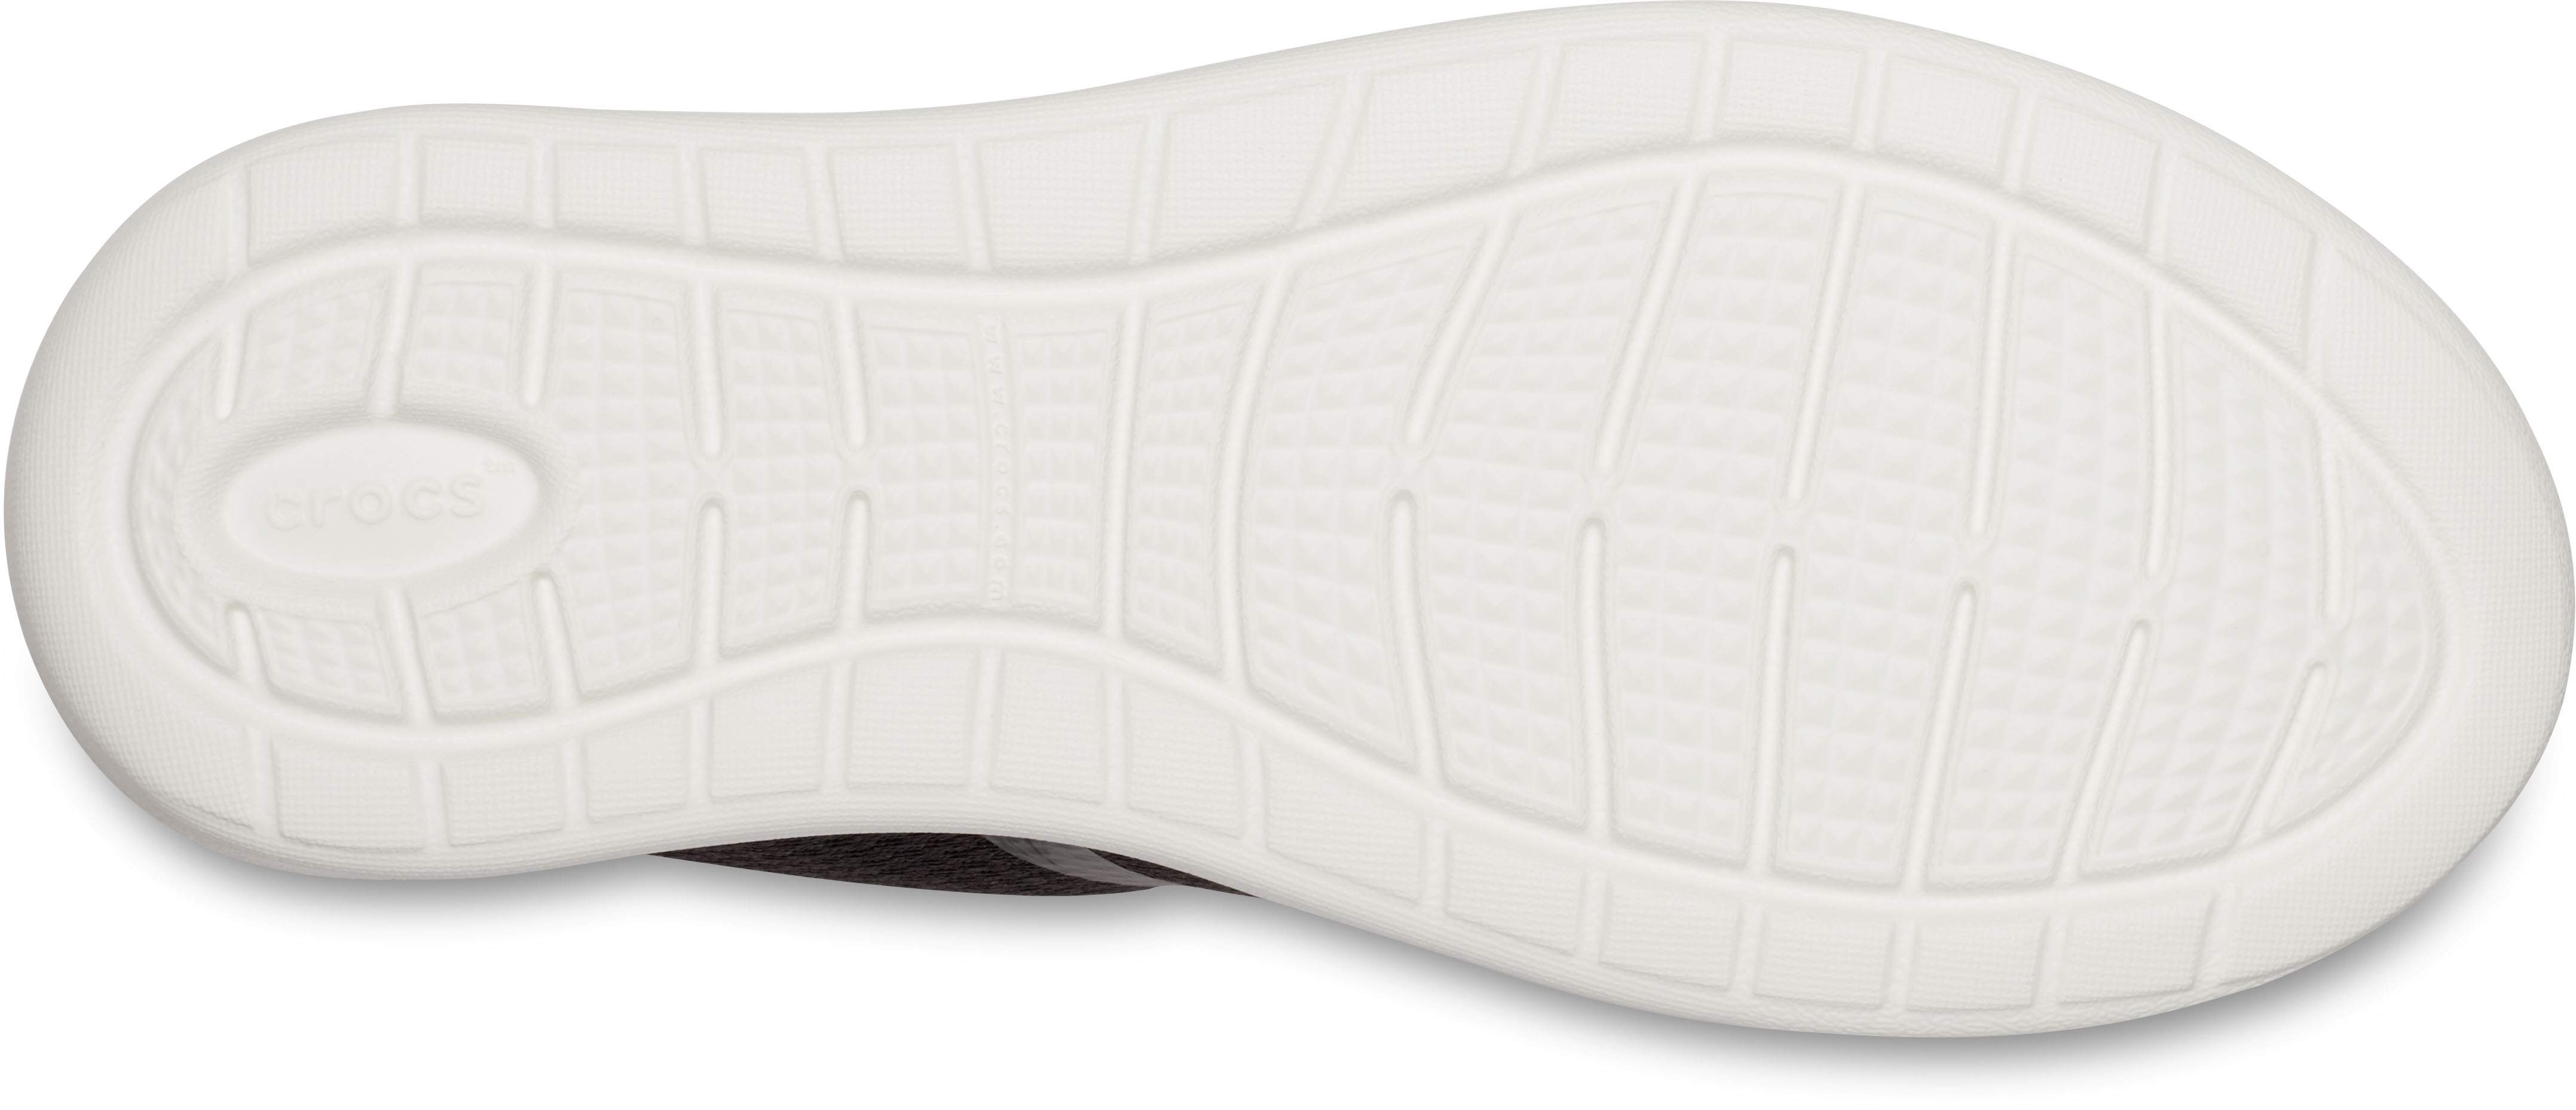 crocs mesh sneakers